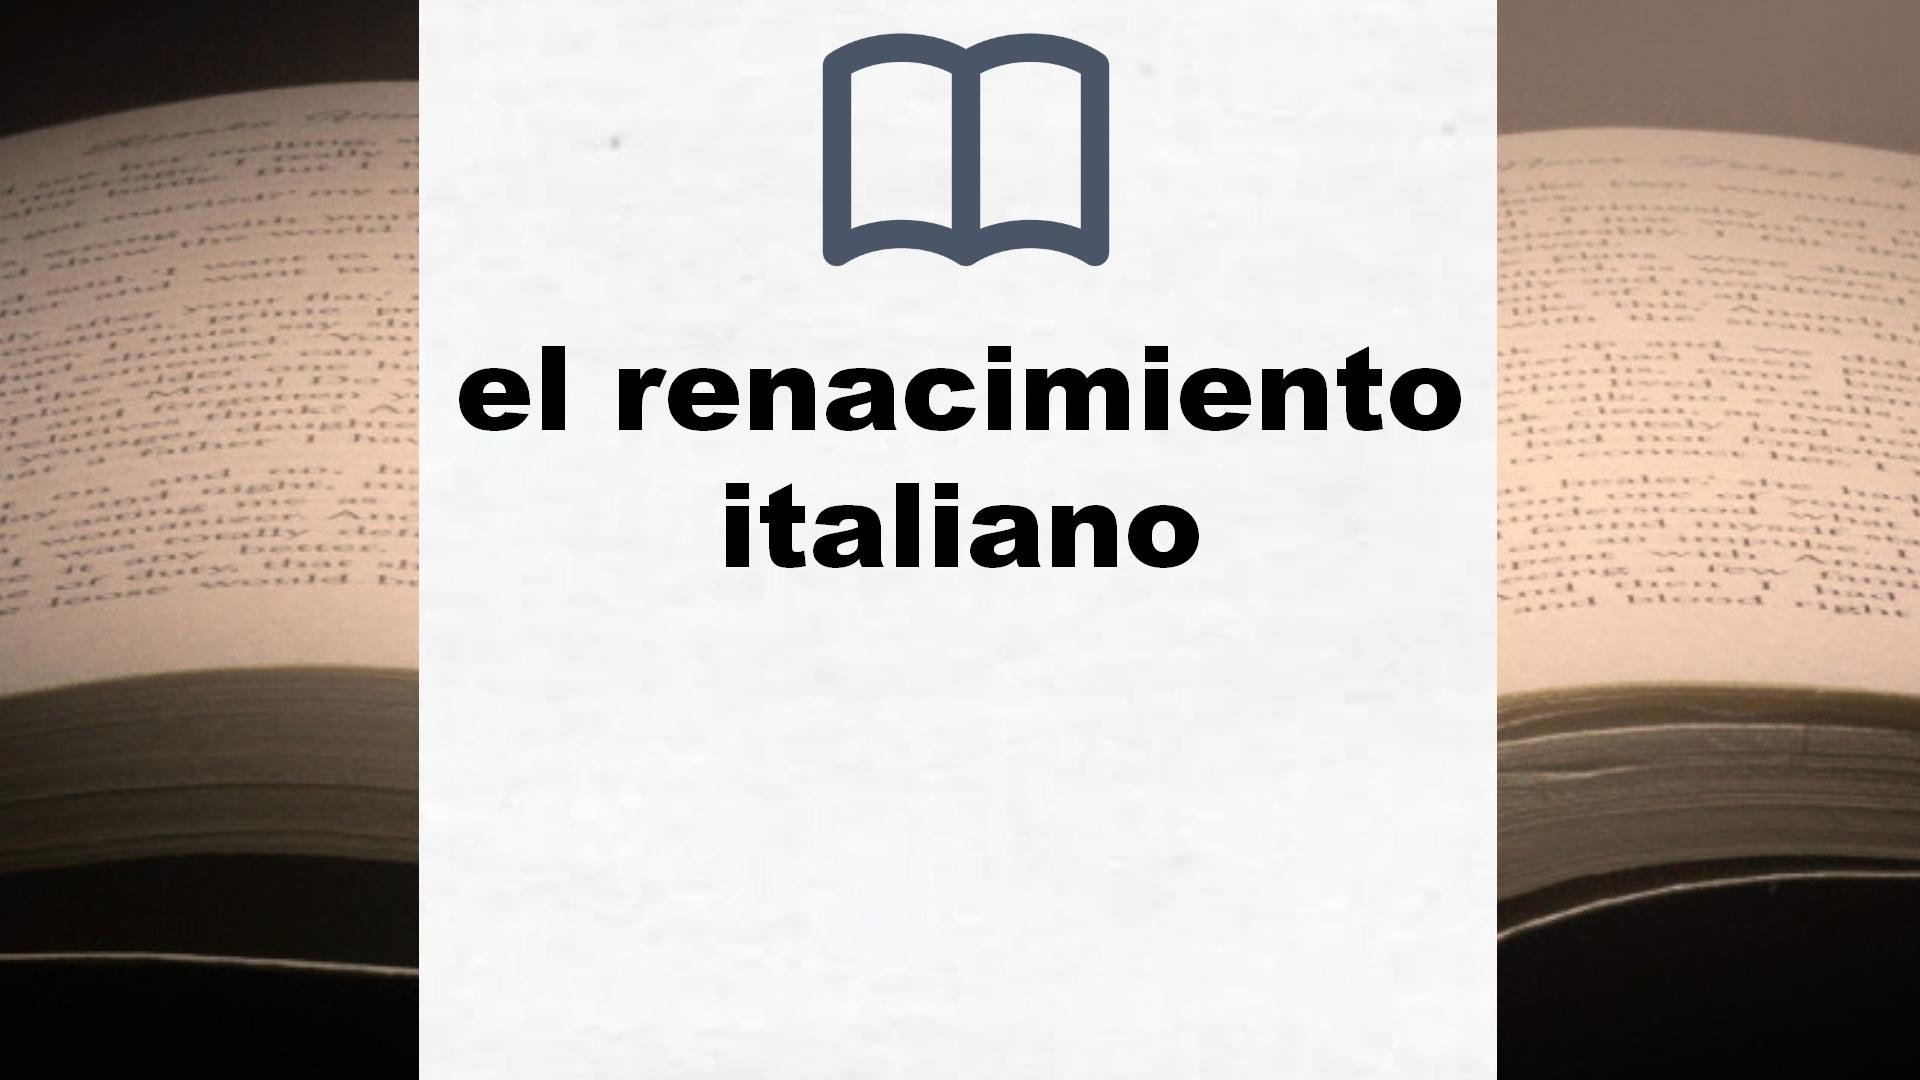 Libros sobre el renacimiento italiano